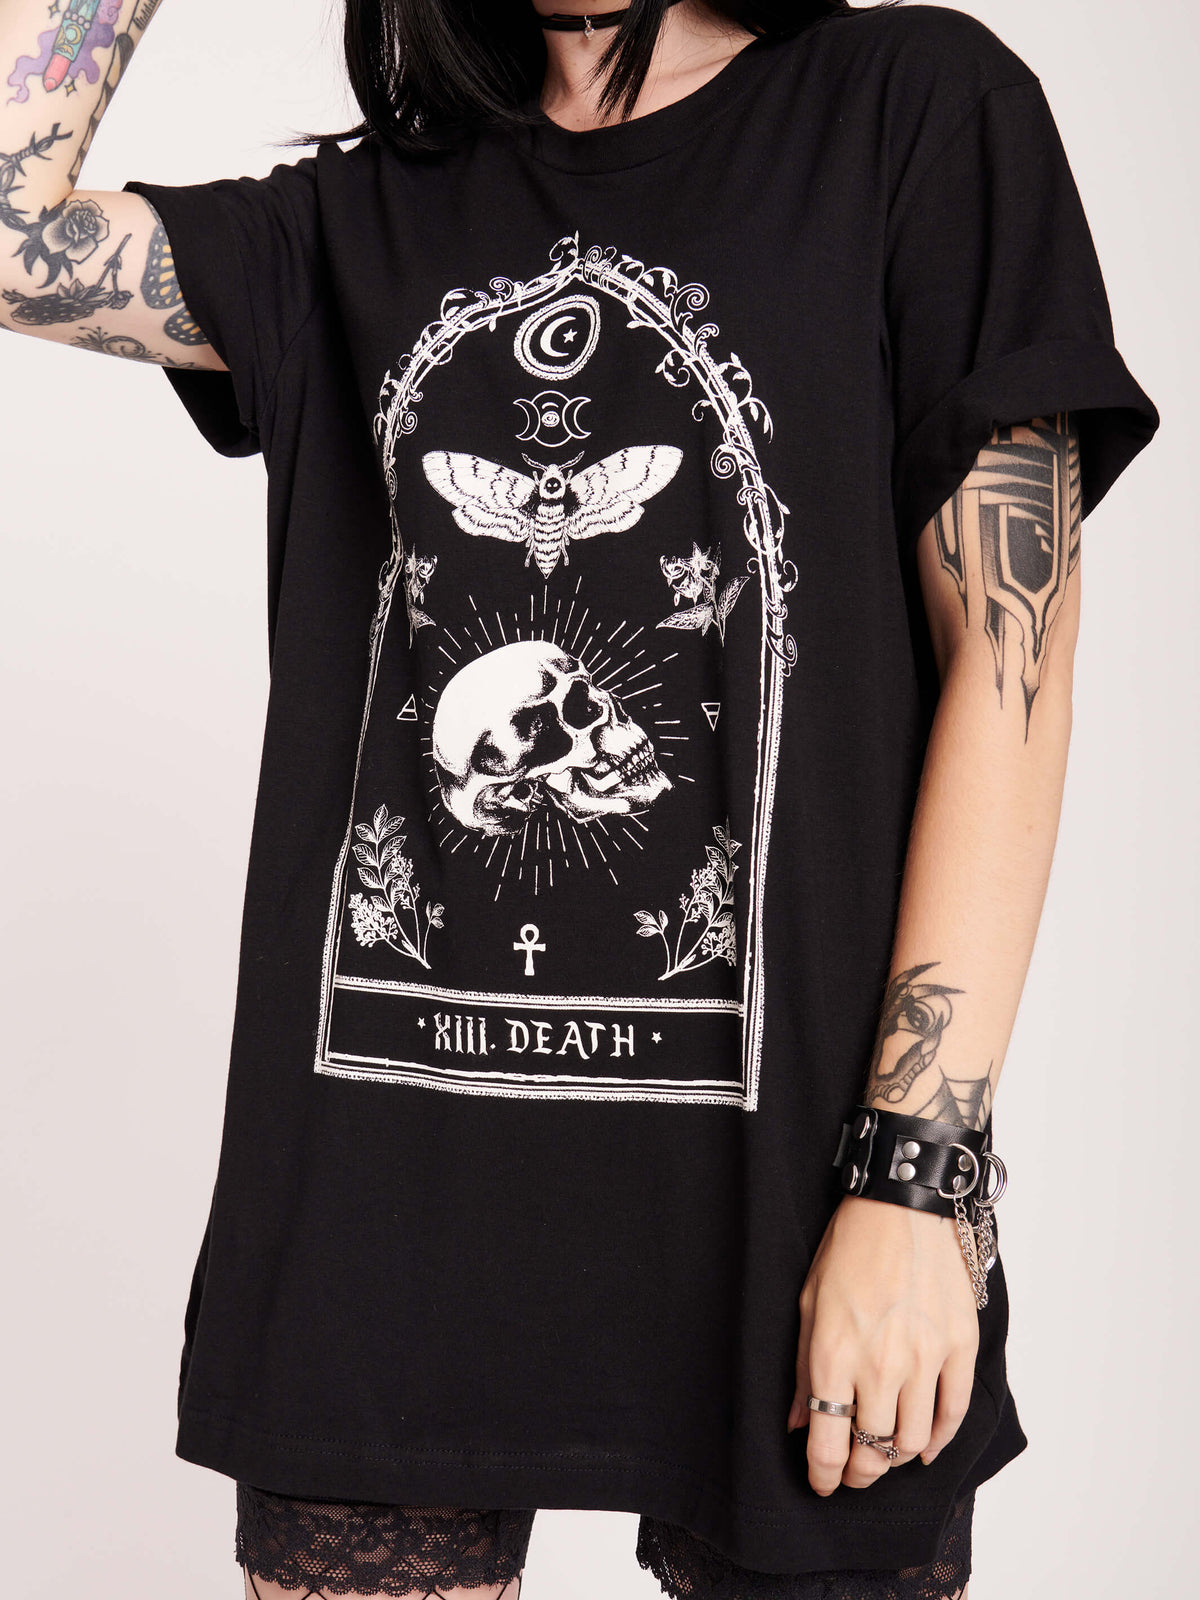 Skull Tarot card t-shirt. 